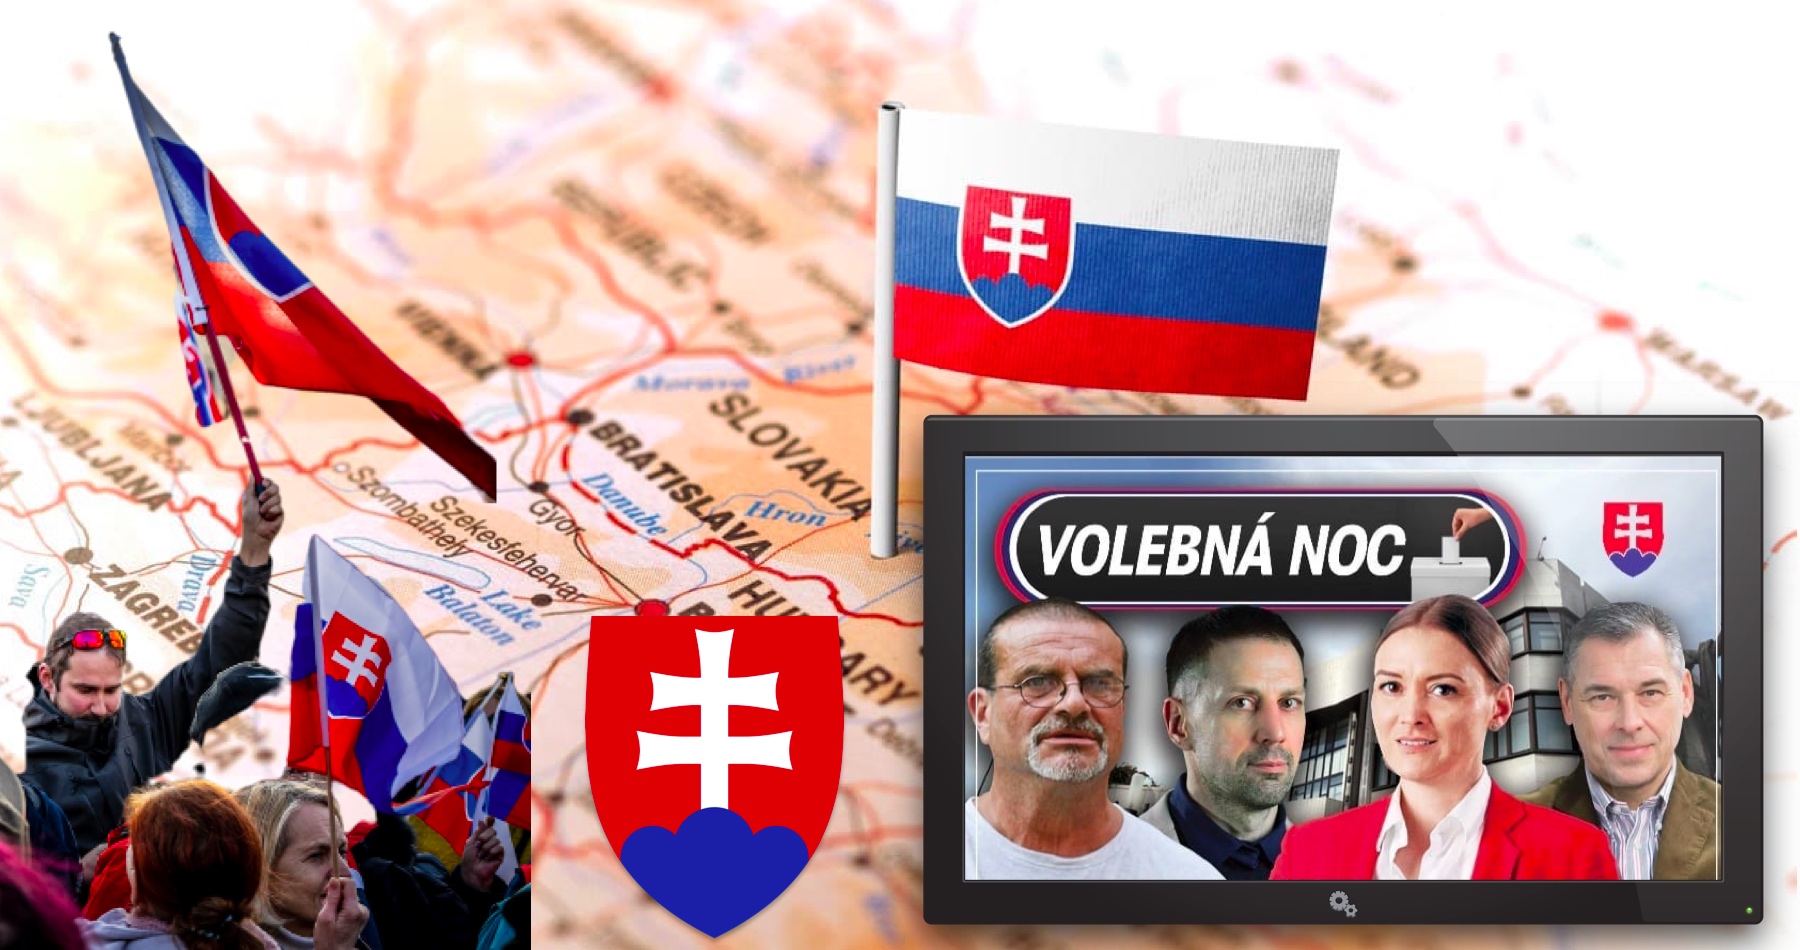 VIDEO: Volebná noc občanov (debata s právničkou Juditou Laššákovou & občanmi - naživo od 20:30)